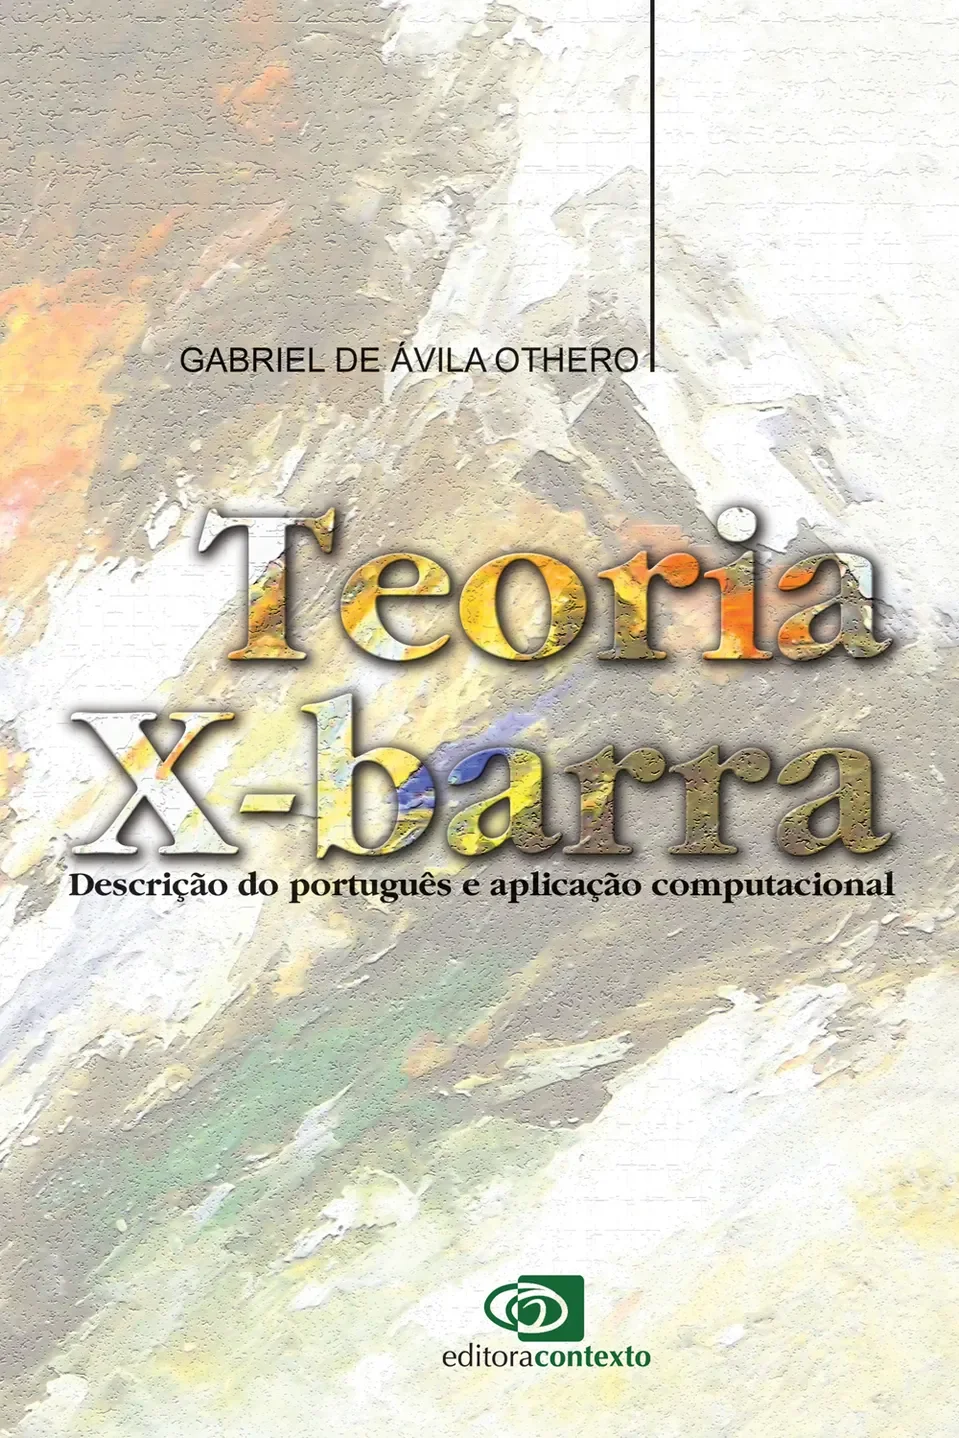 Gabriel 'Von' Barbosa on X:  / X